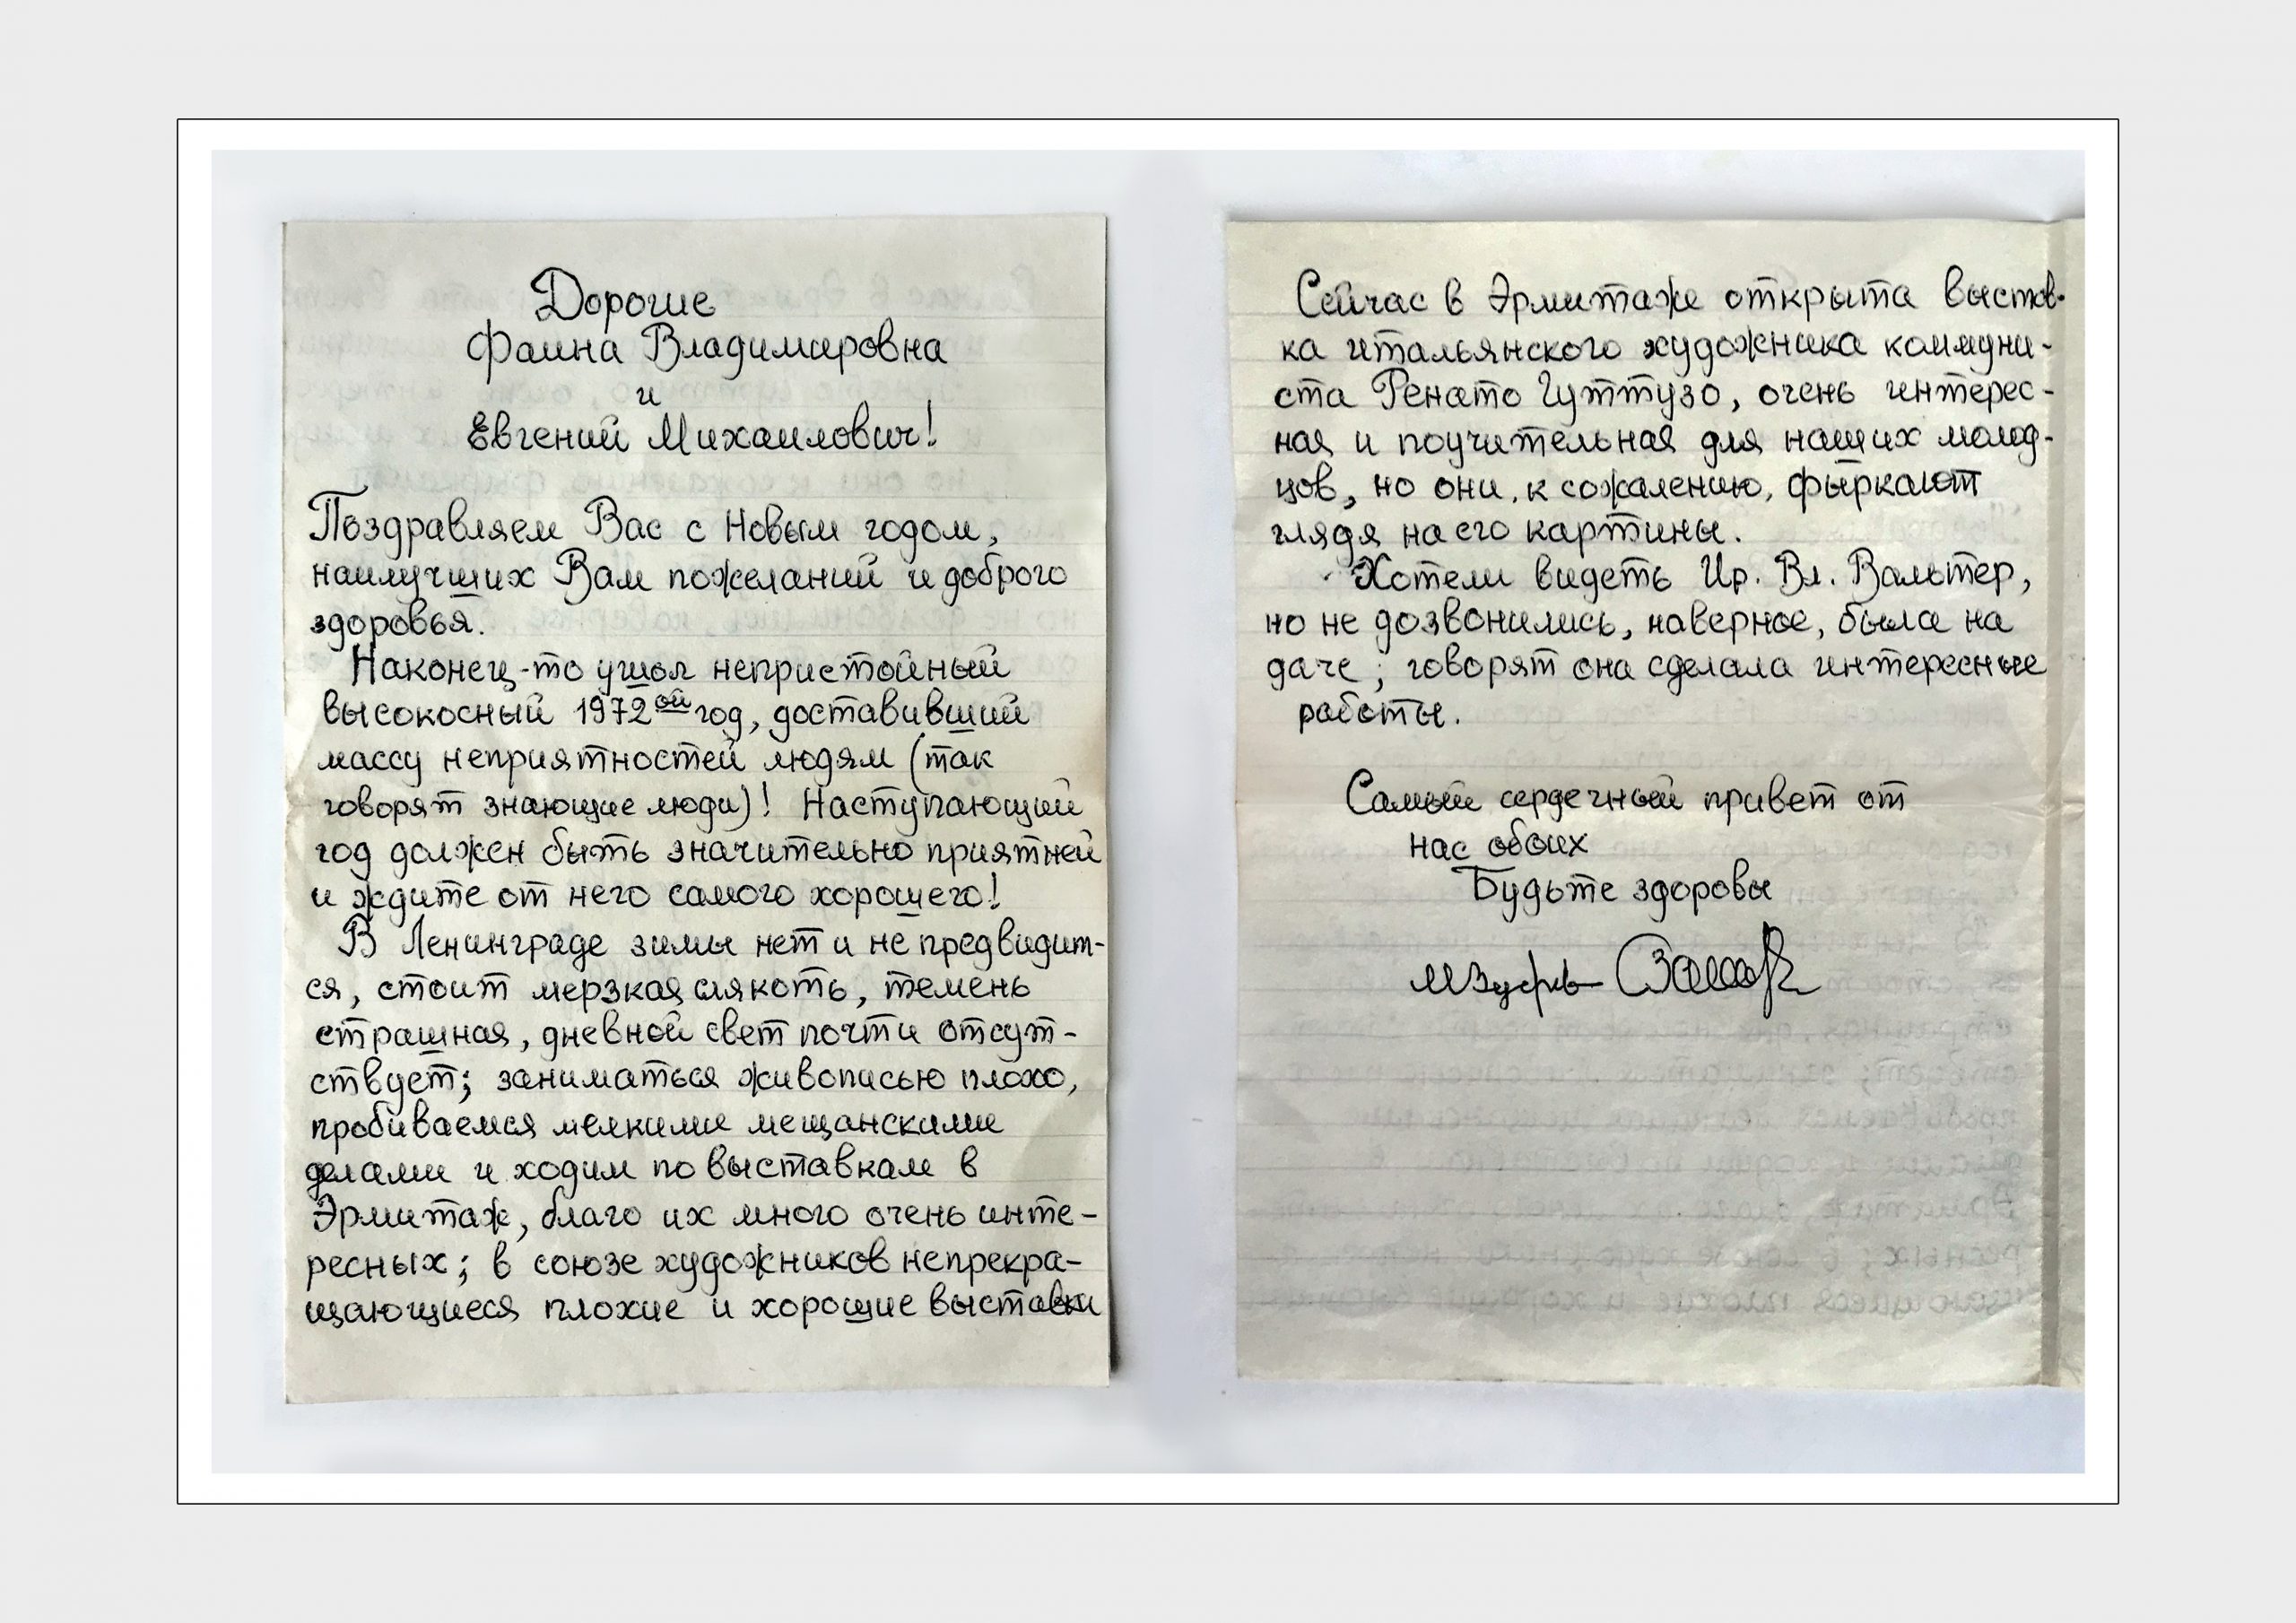 Письмо Крогиус Ф.В. и Крохину Е.М. от Зедерева М.
Бумага, рукопись
г. Ленинград 1973 г.